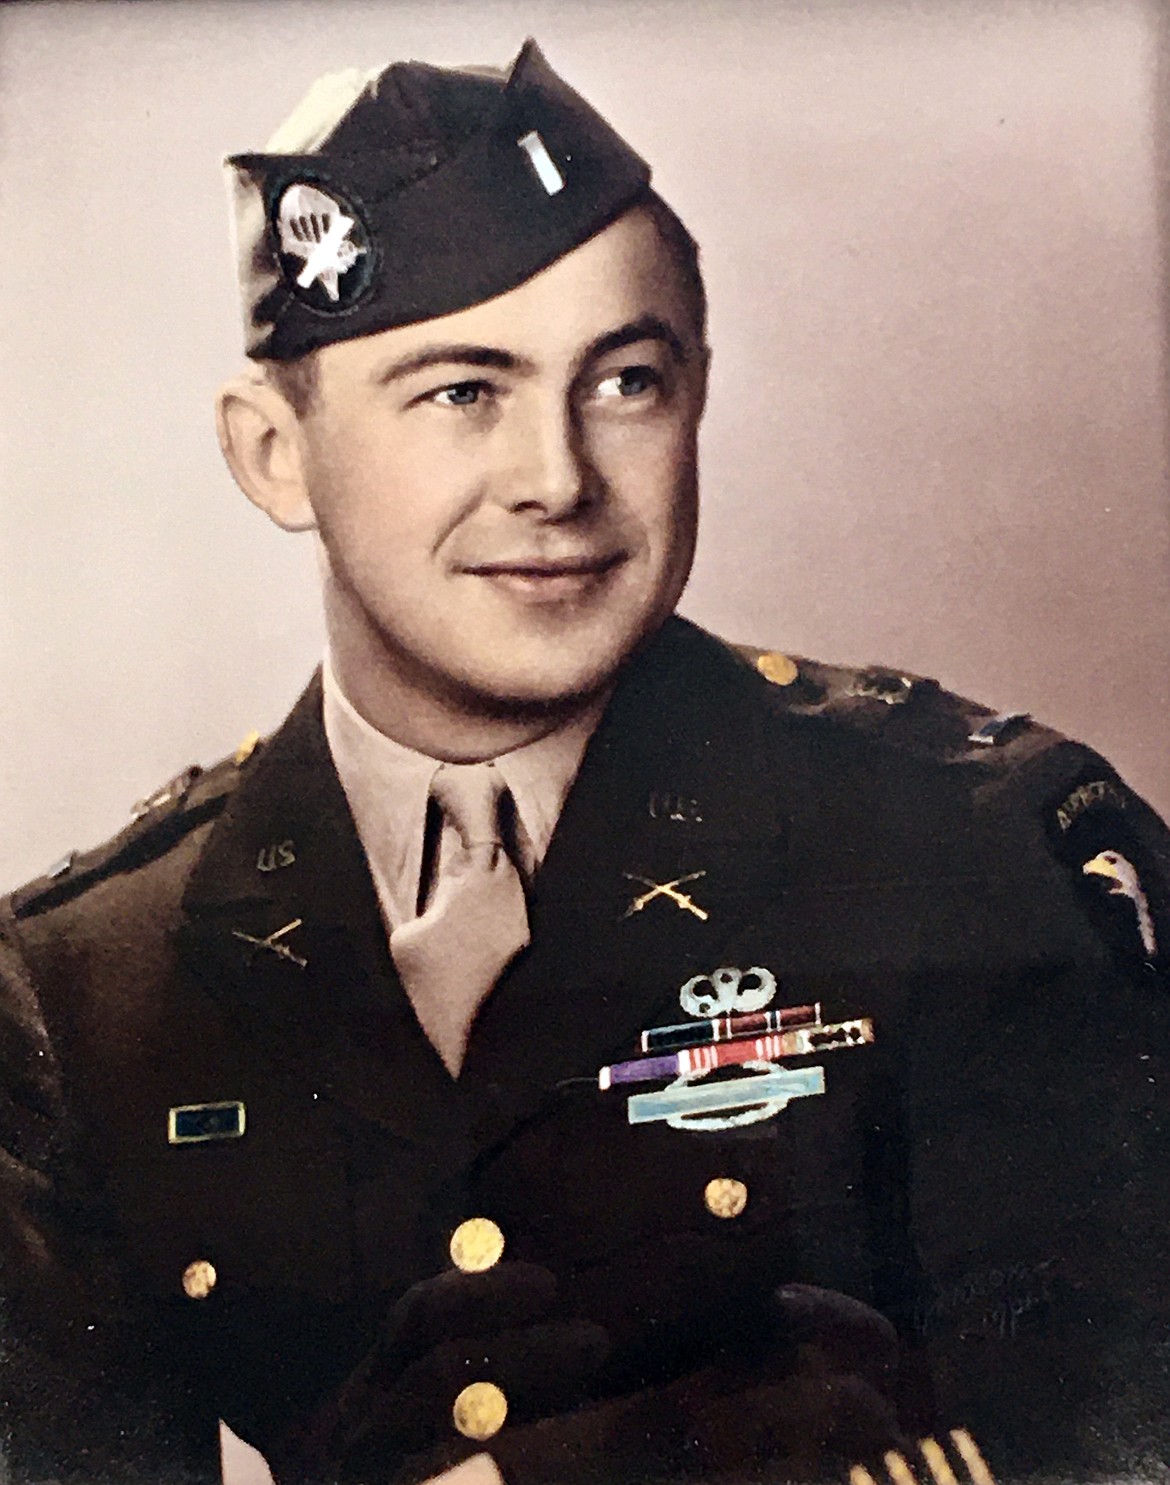 Donald Zahn is seen in his World War II service photo.